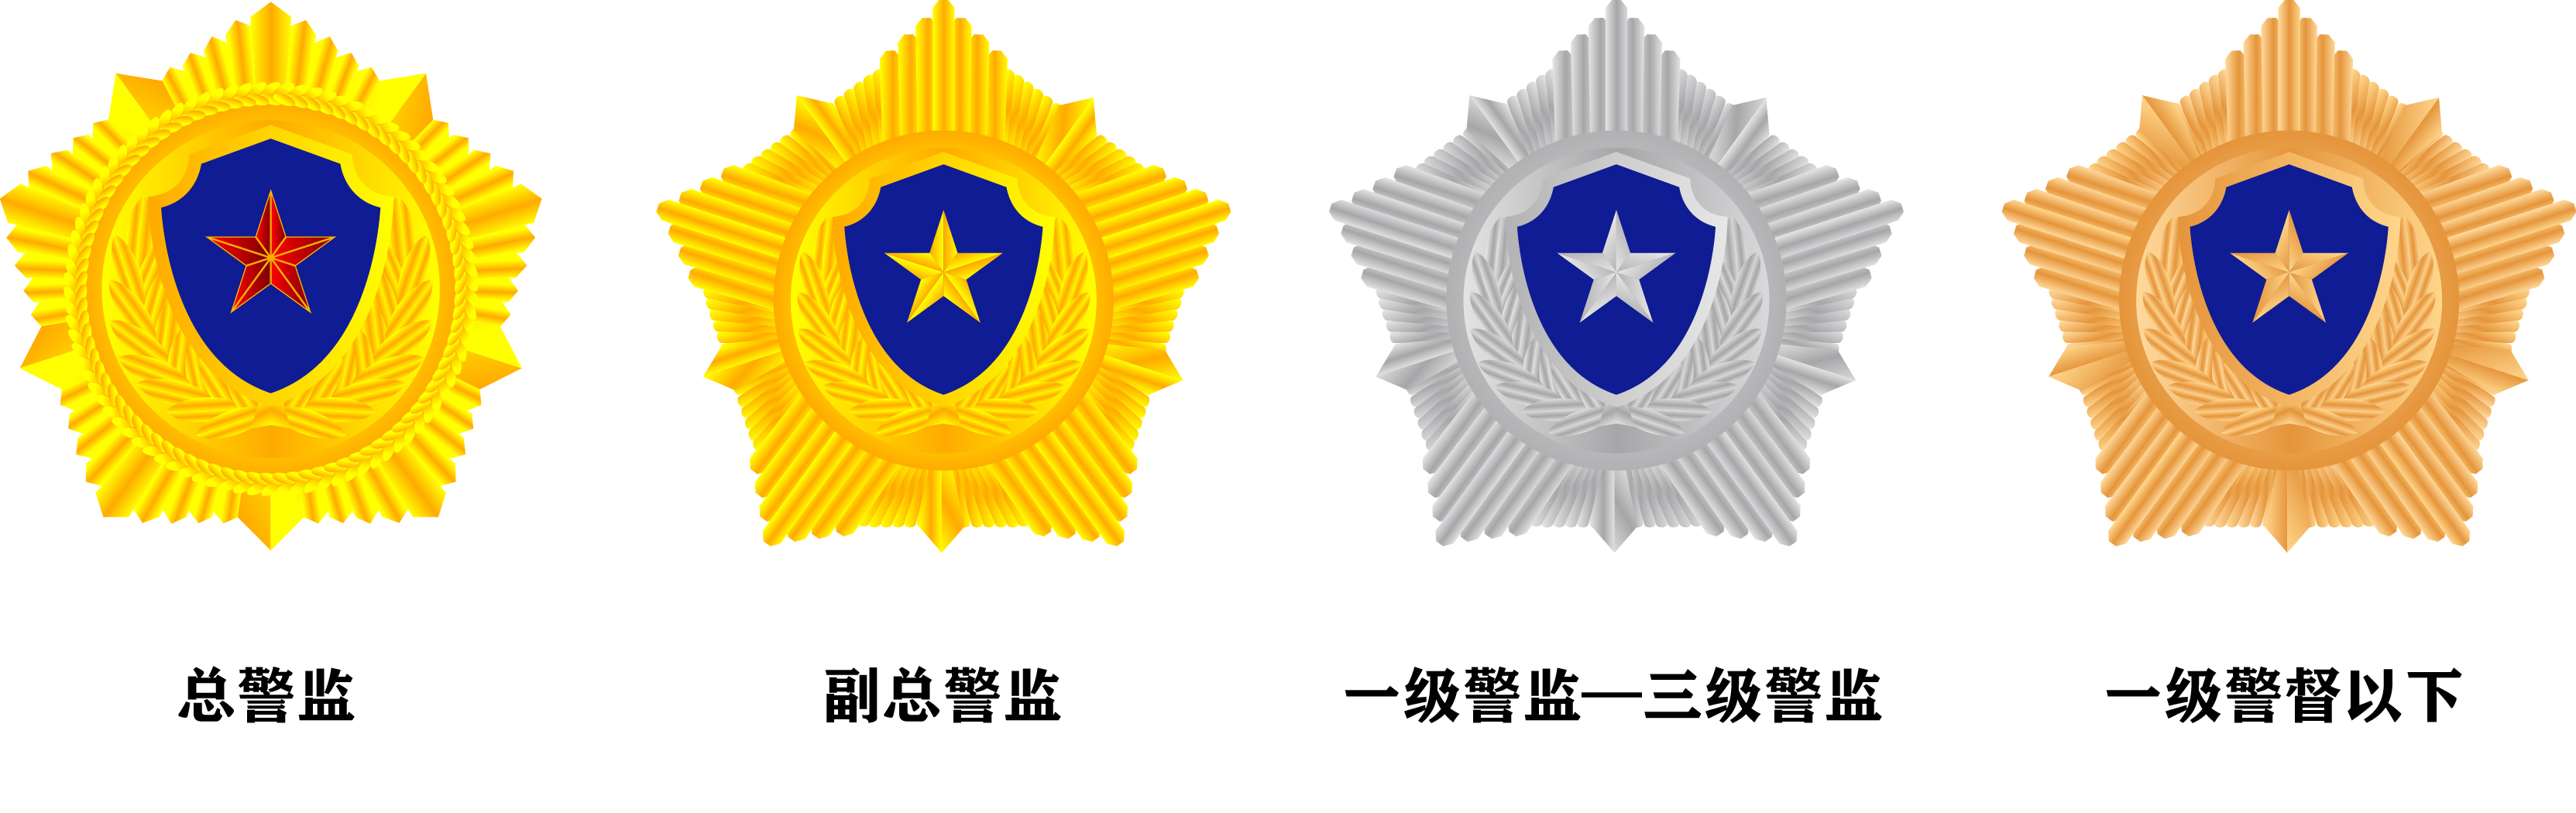 银盾章,人民警察蓝盾章三种,其中金盾章是指总警监警衔和副总警监警